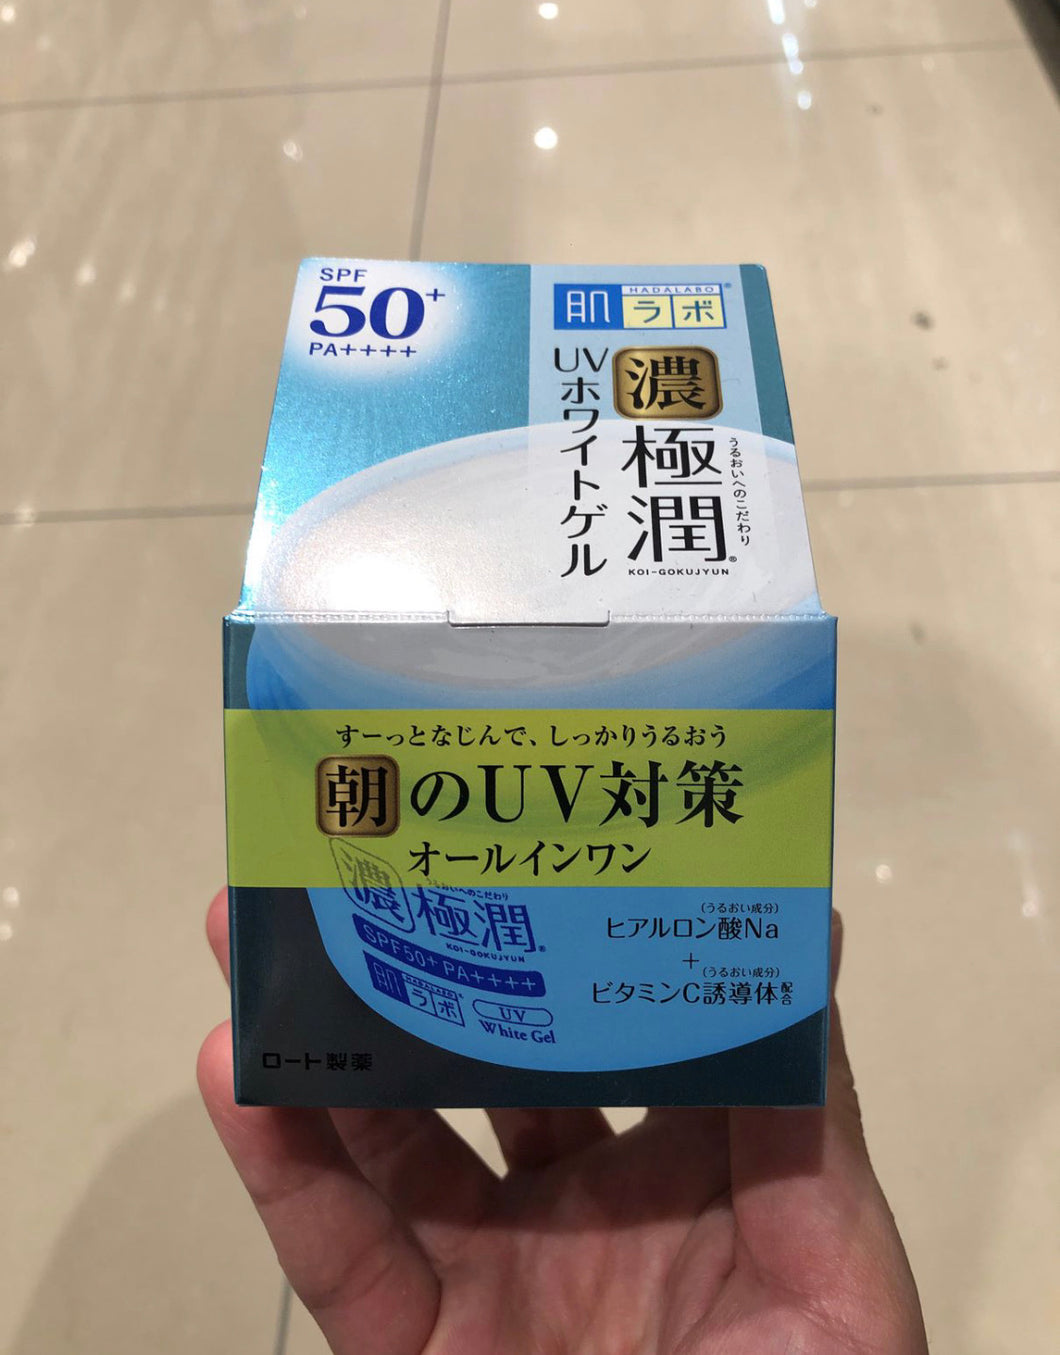 Hadalabo Koi-Gokujyun UV White Gel SPF 50+